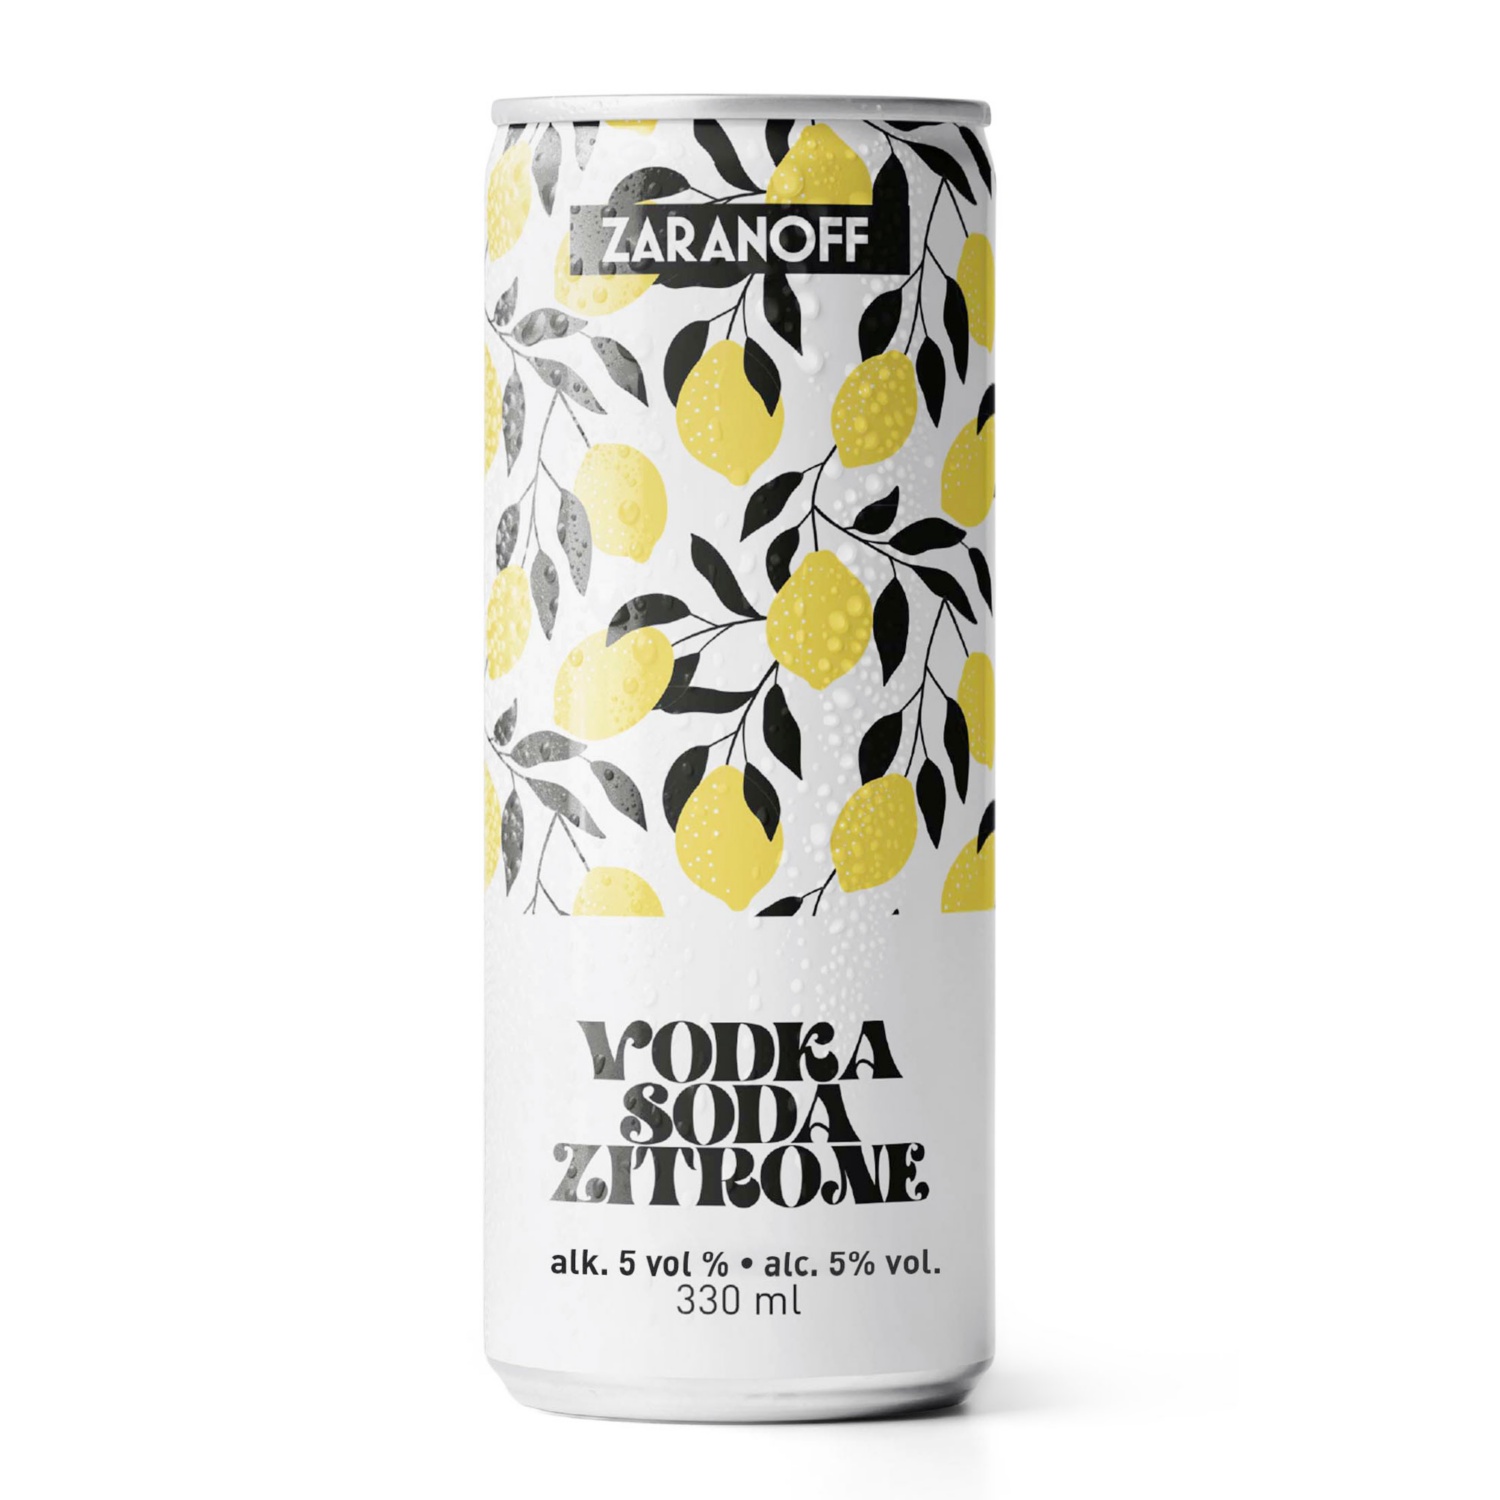 Vodka Soda Zitrone 330ml